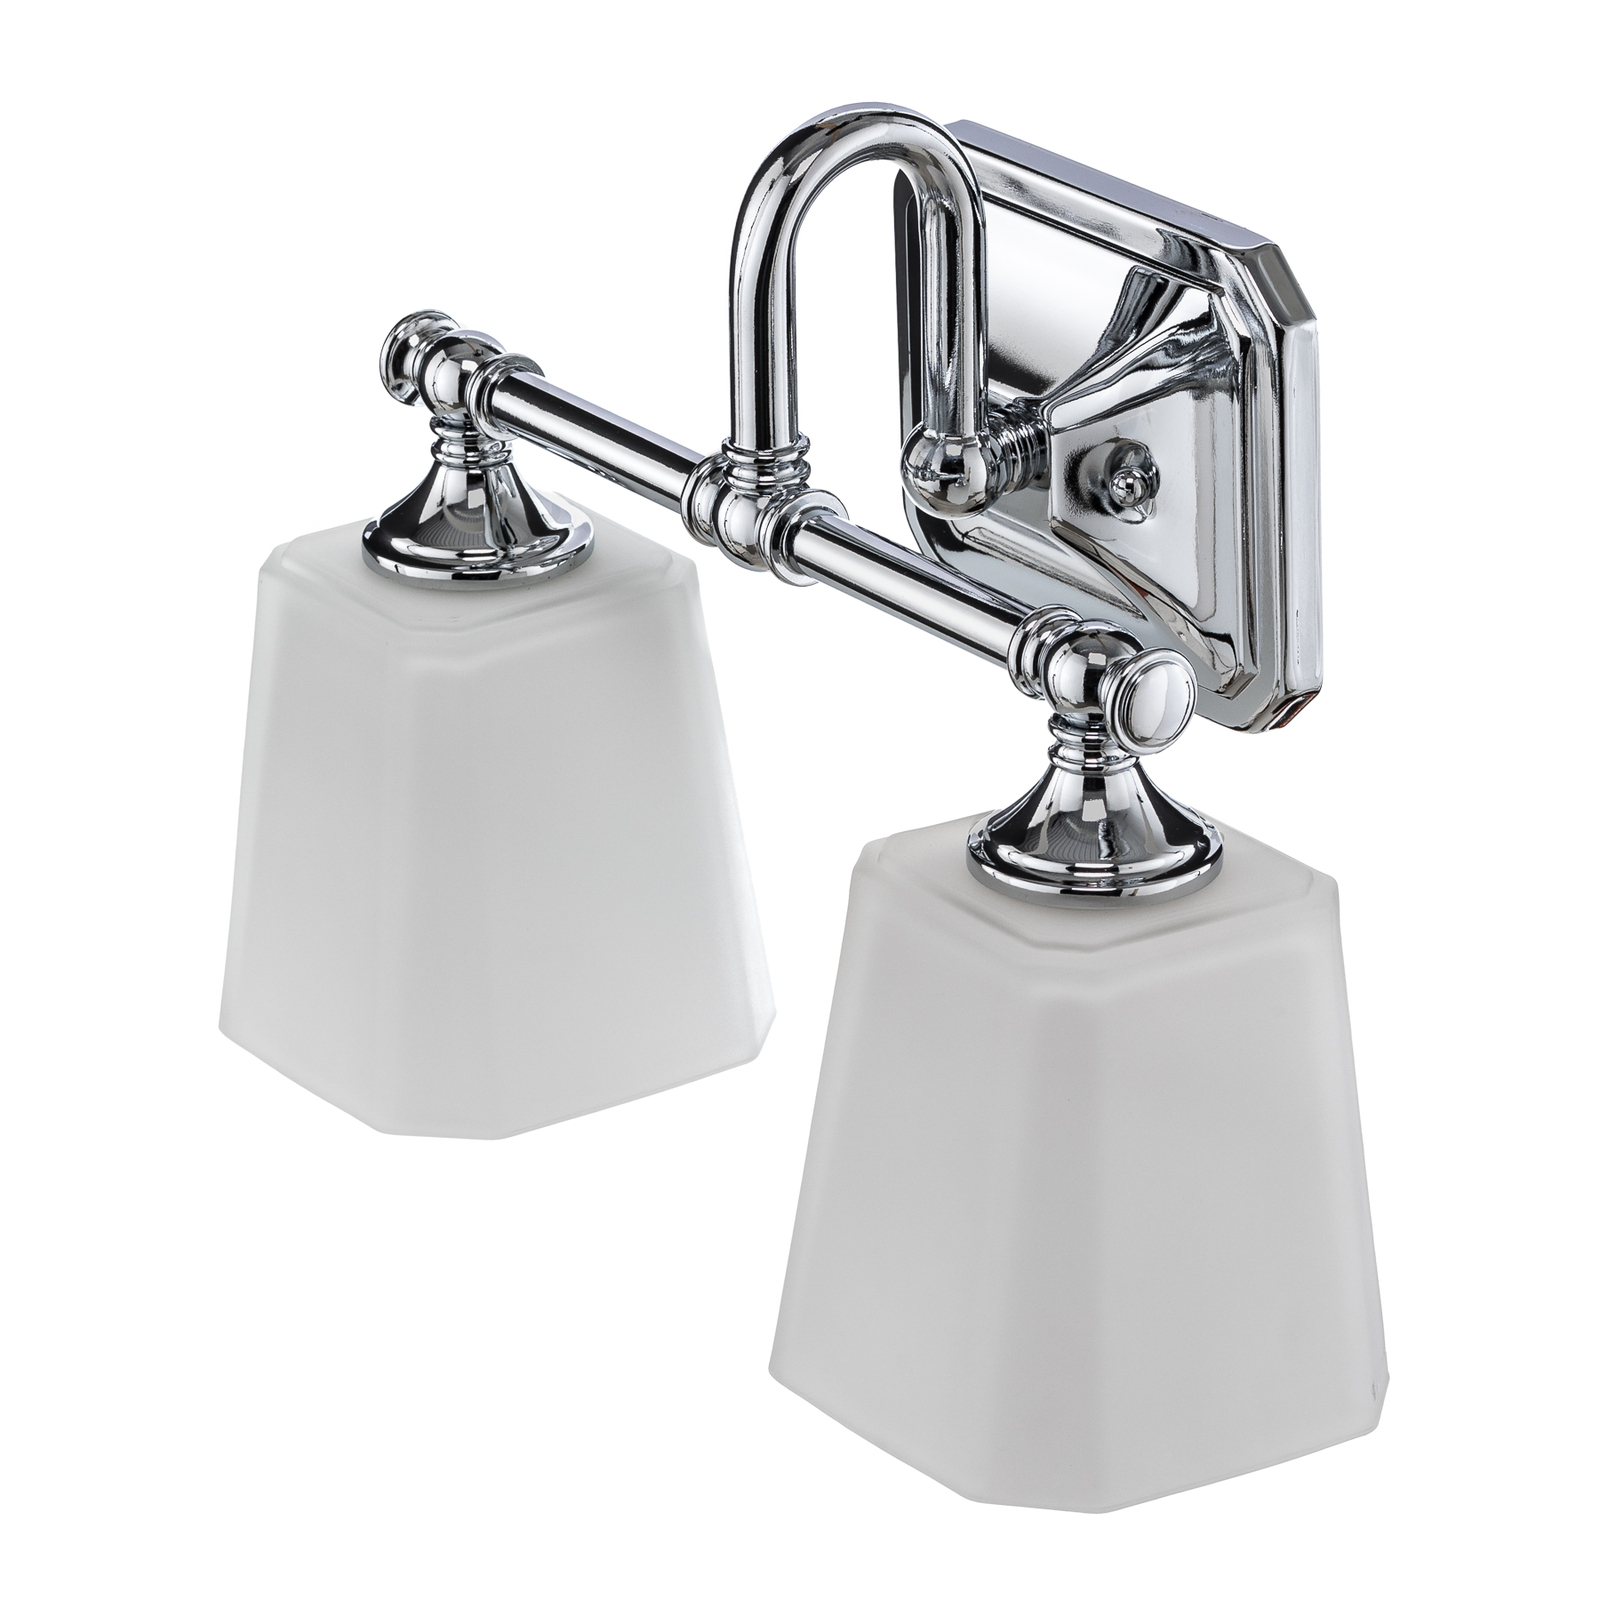 Concord – kaksilamppuinen kylpyhuoneen peililamppu